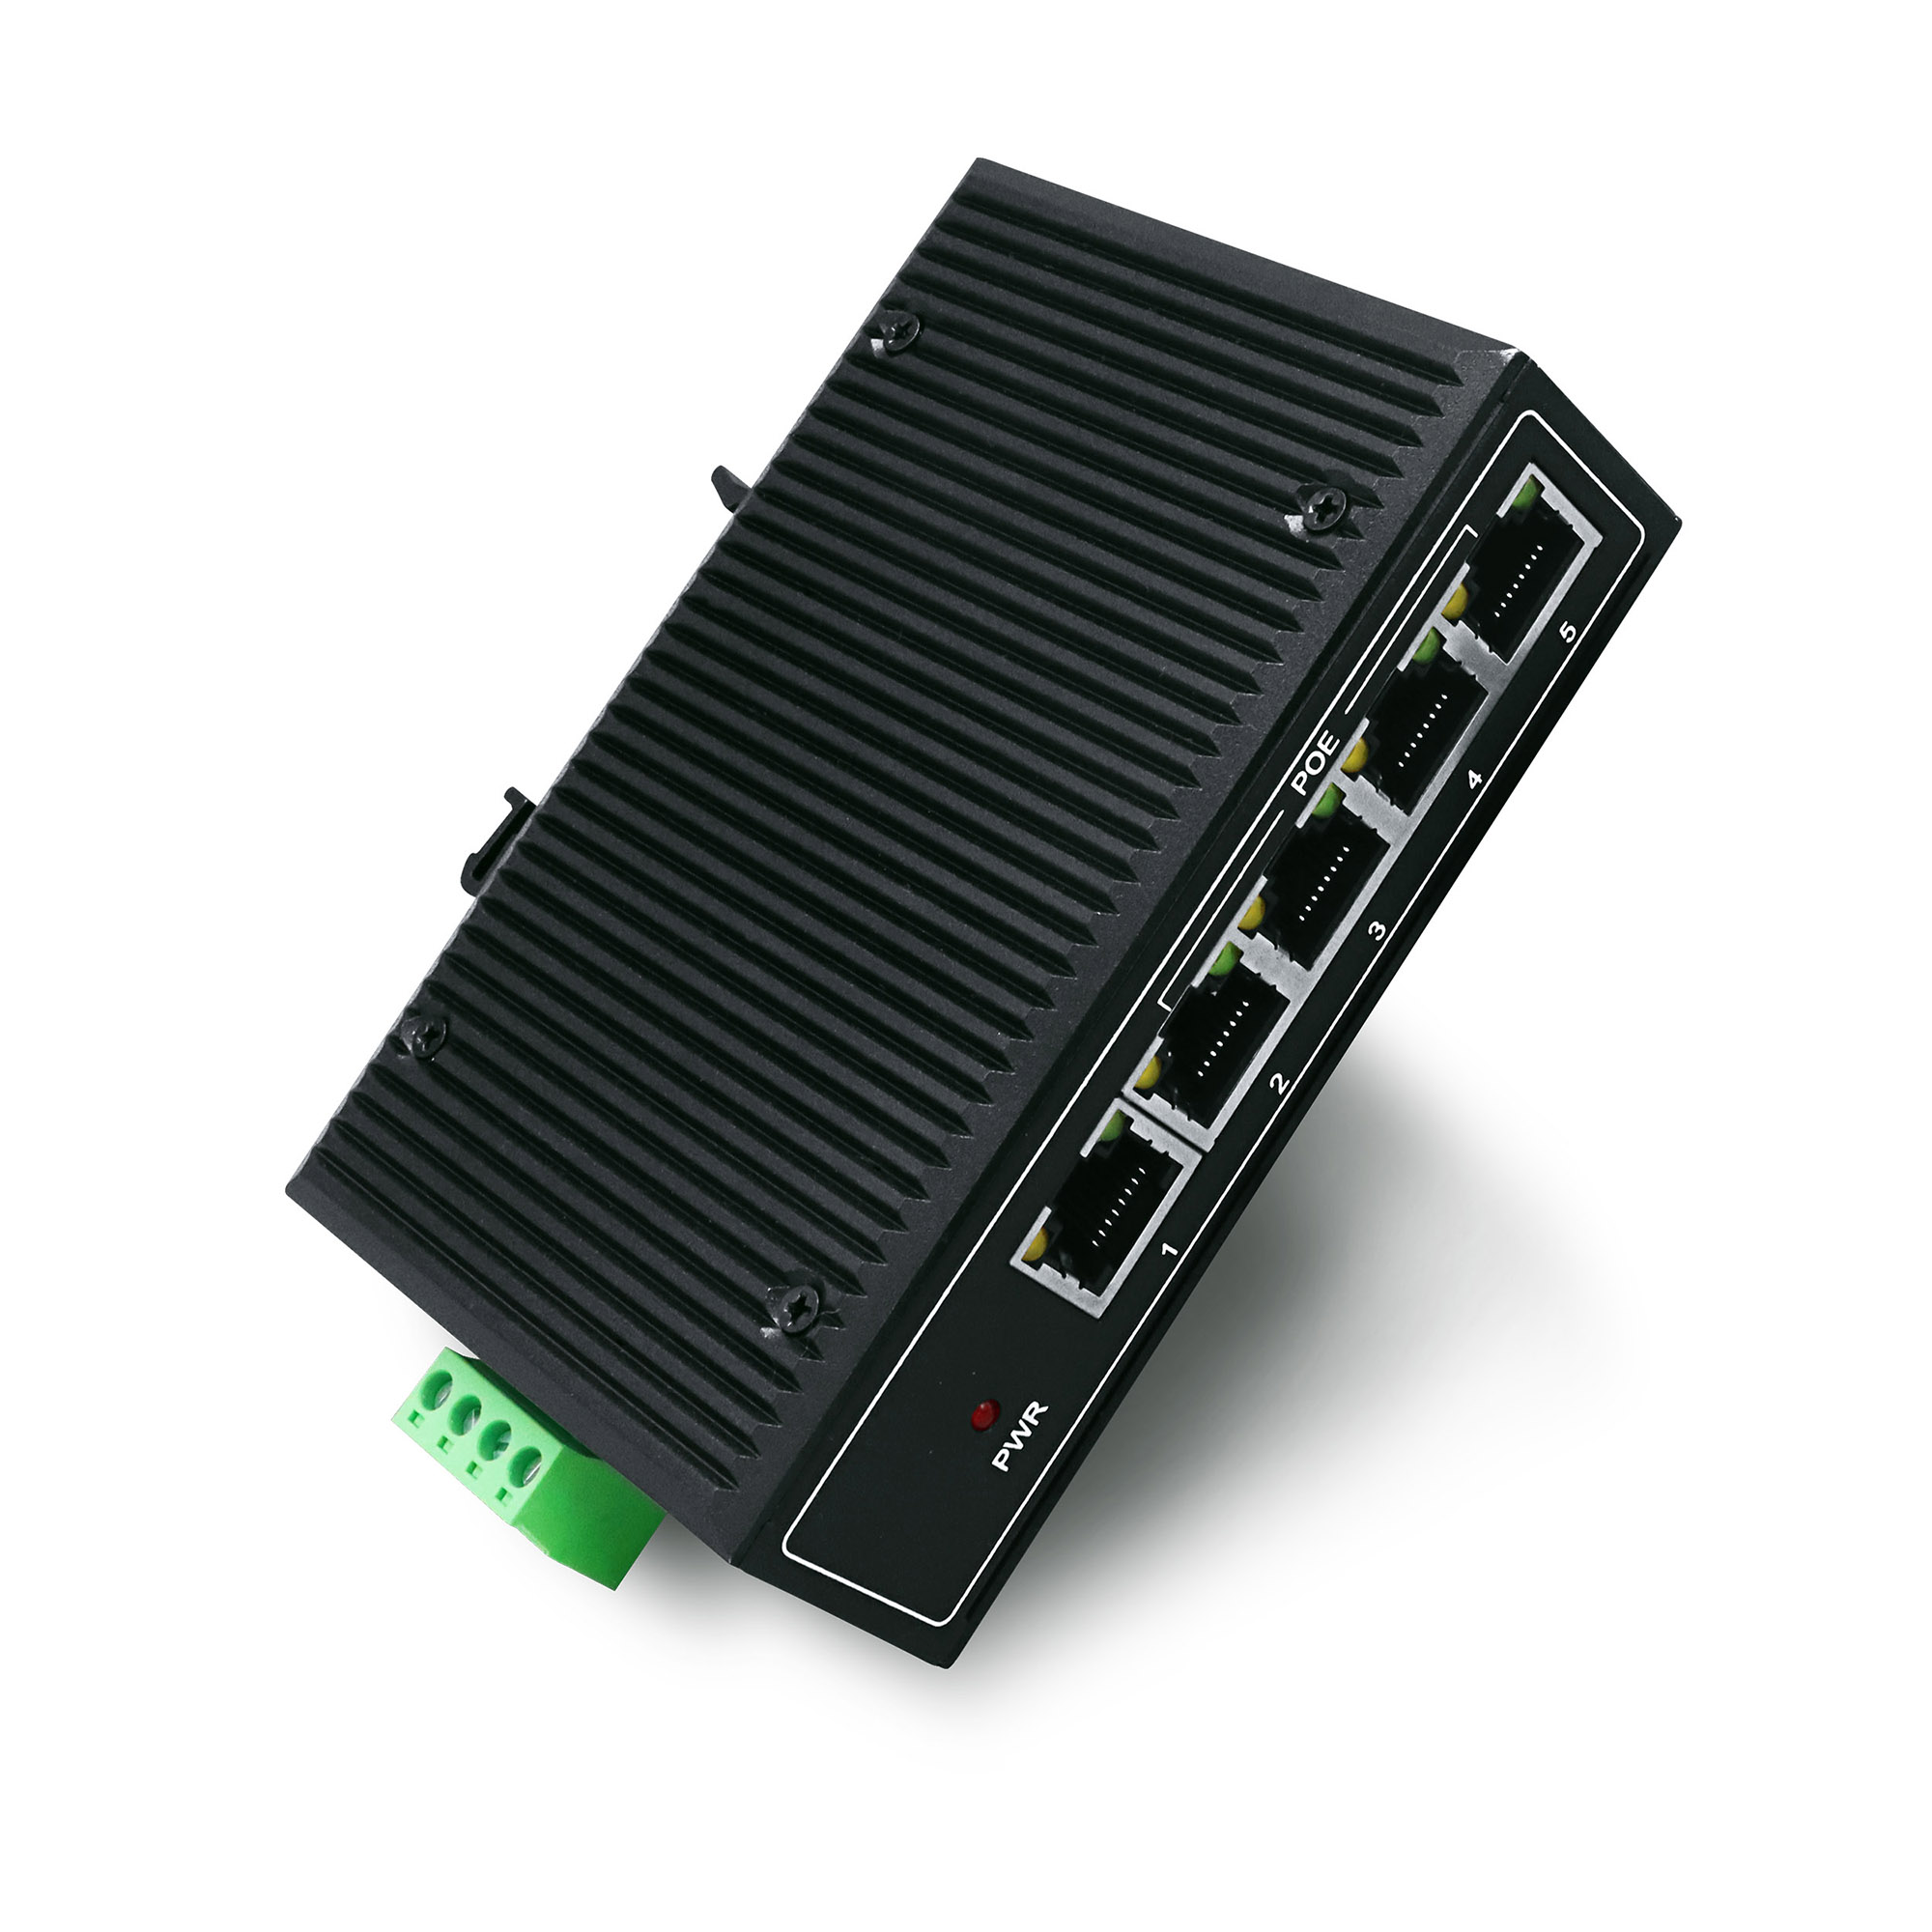 YN-SF105P1 Industrial Ethernet PoE Switch